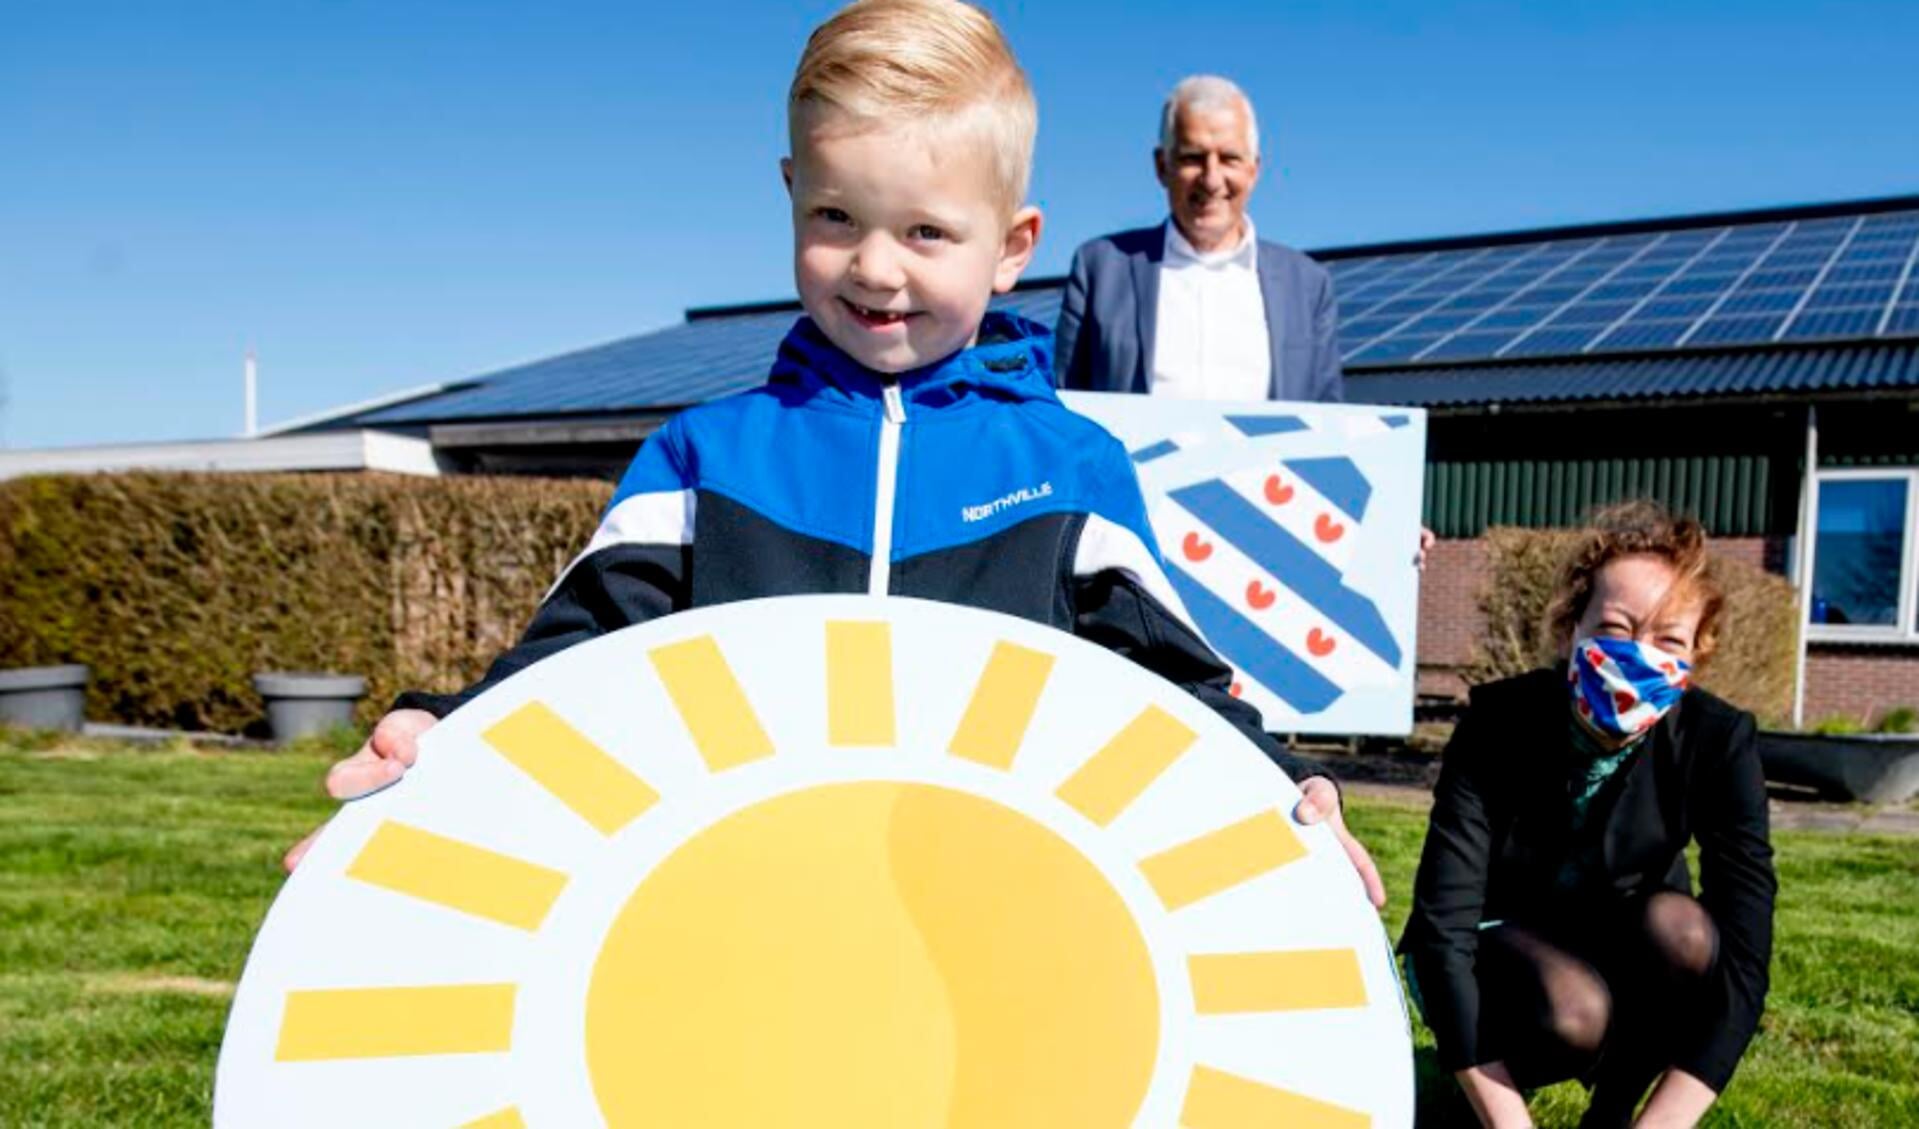 Gedeputeerde Sietske Poepjes en wethouder Bert Wassink overhandigen Jelte met de symbolische zon een duurzame toekomst in Fryslân toe.